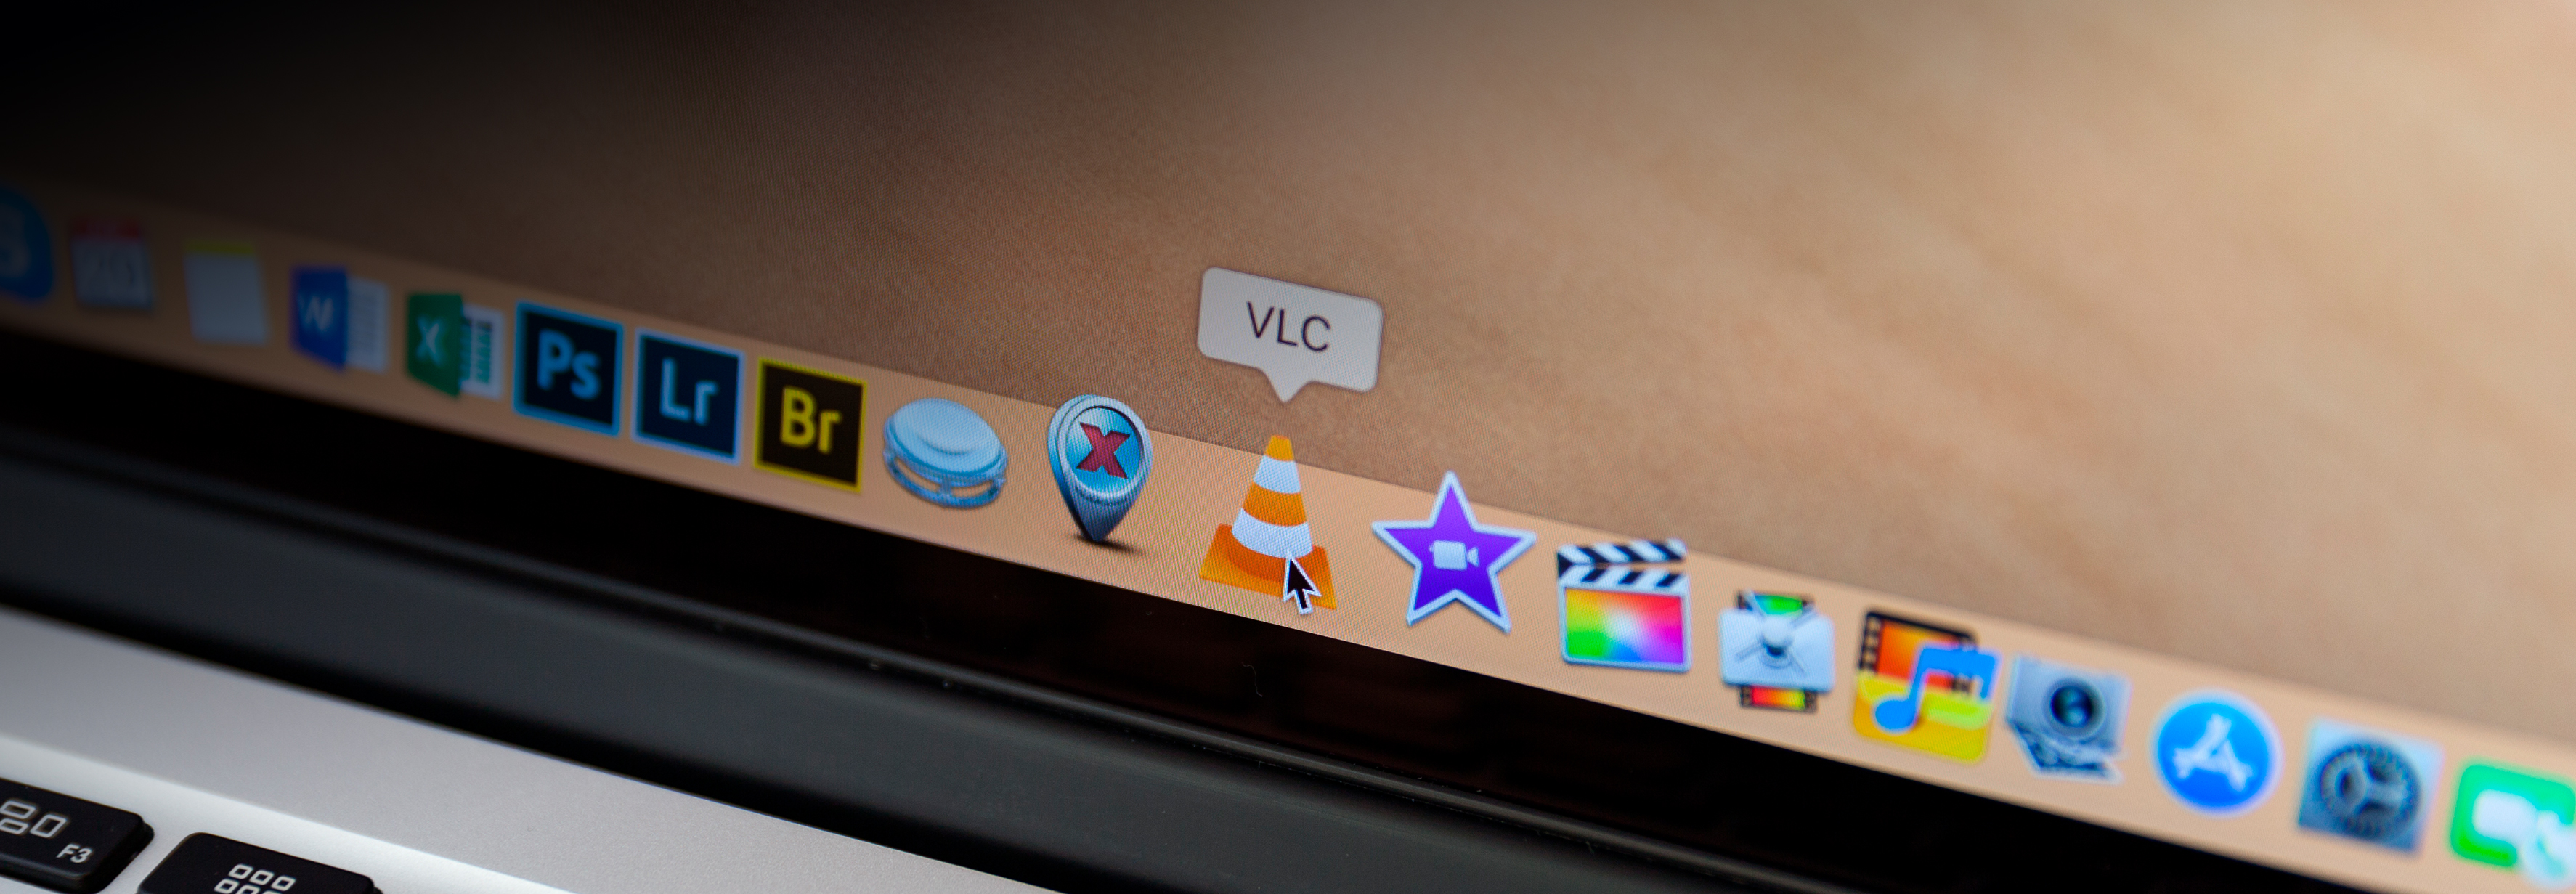 Тормозит и отстает видео 4K в VLC: что делать?